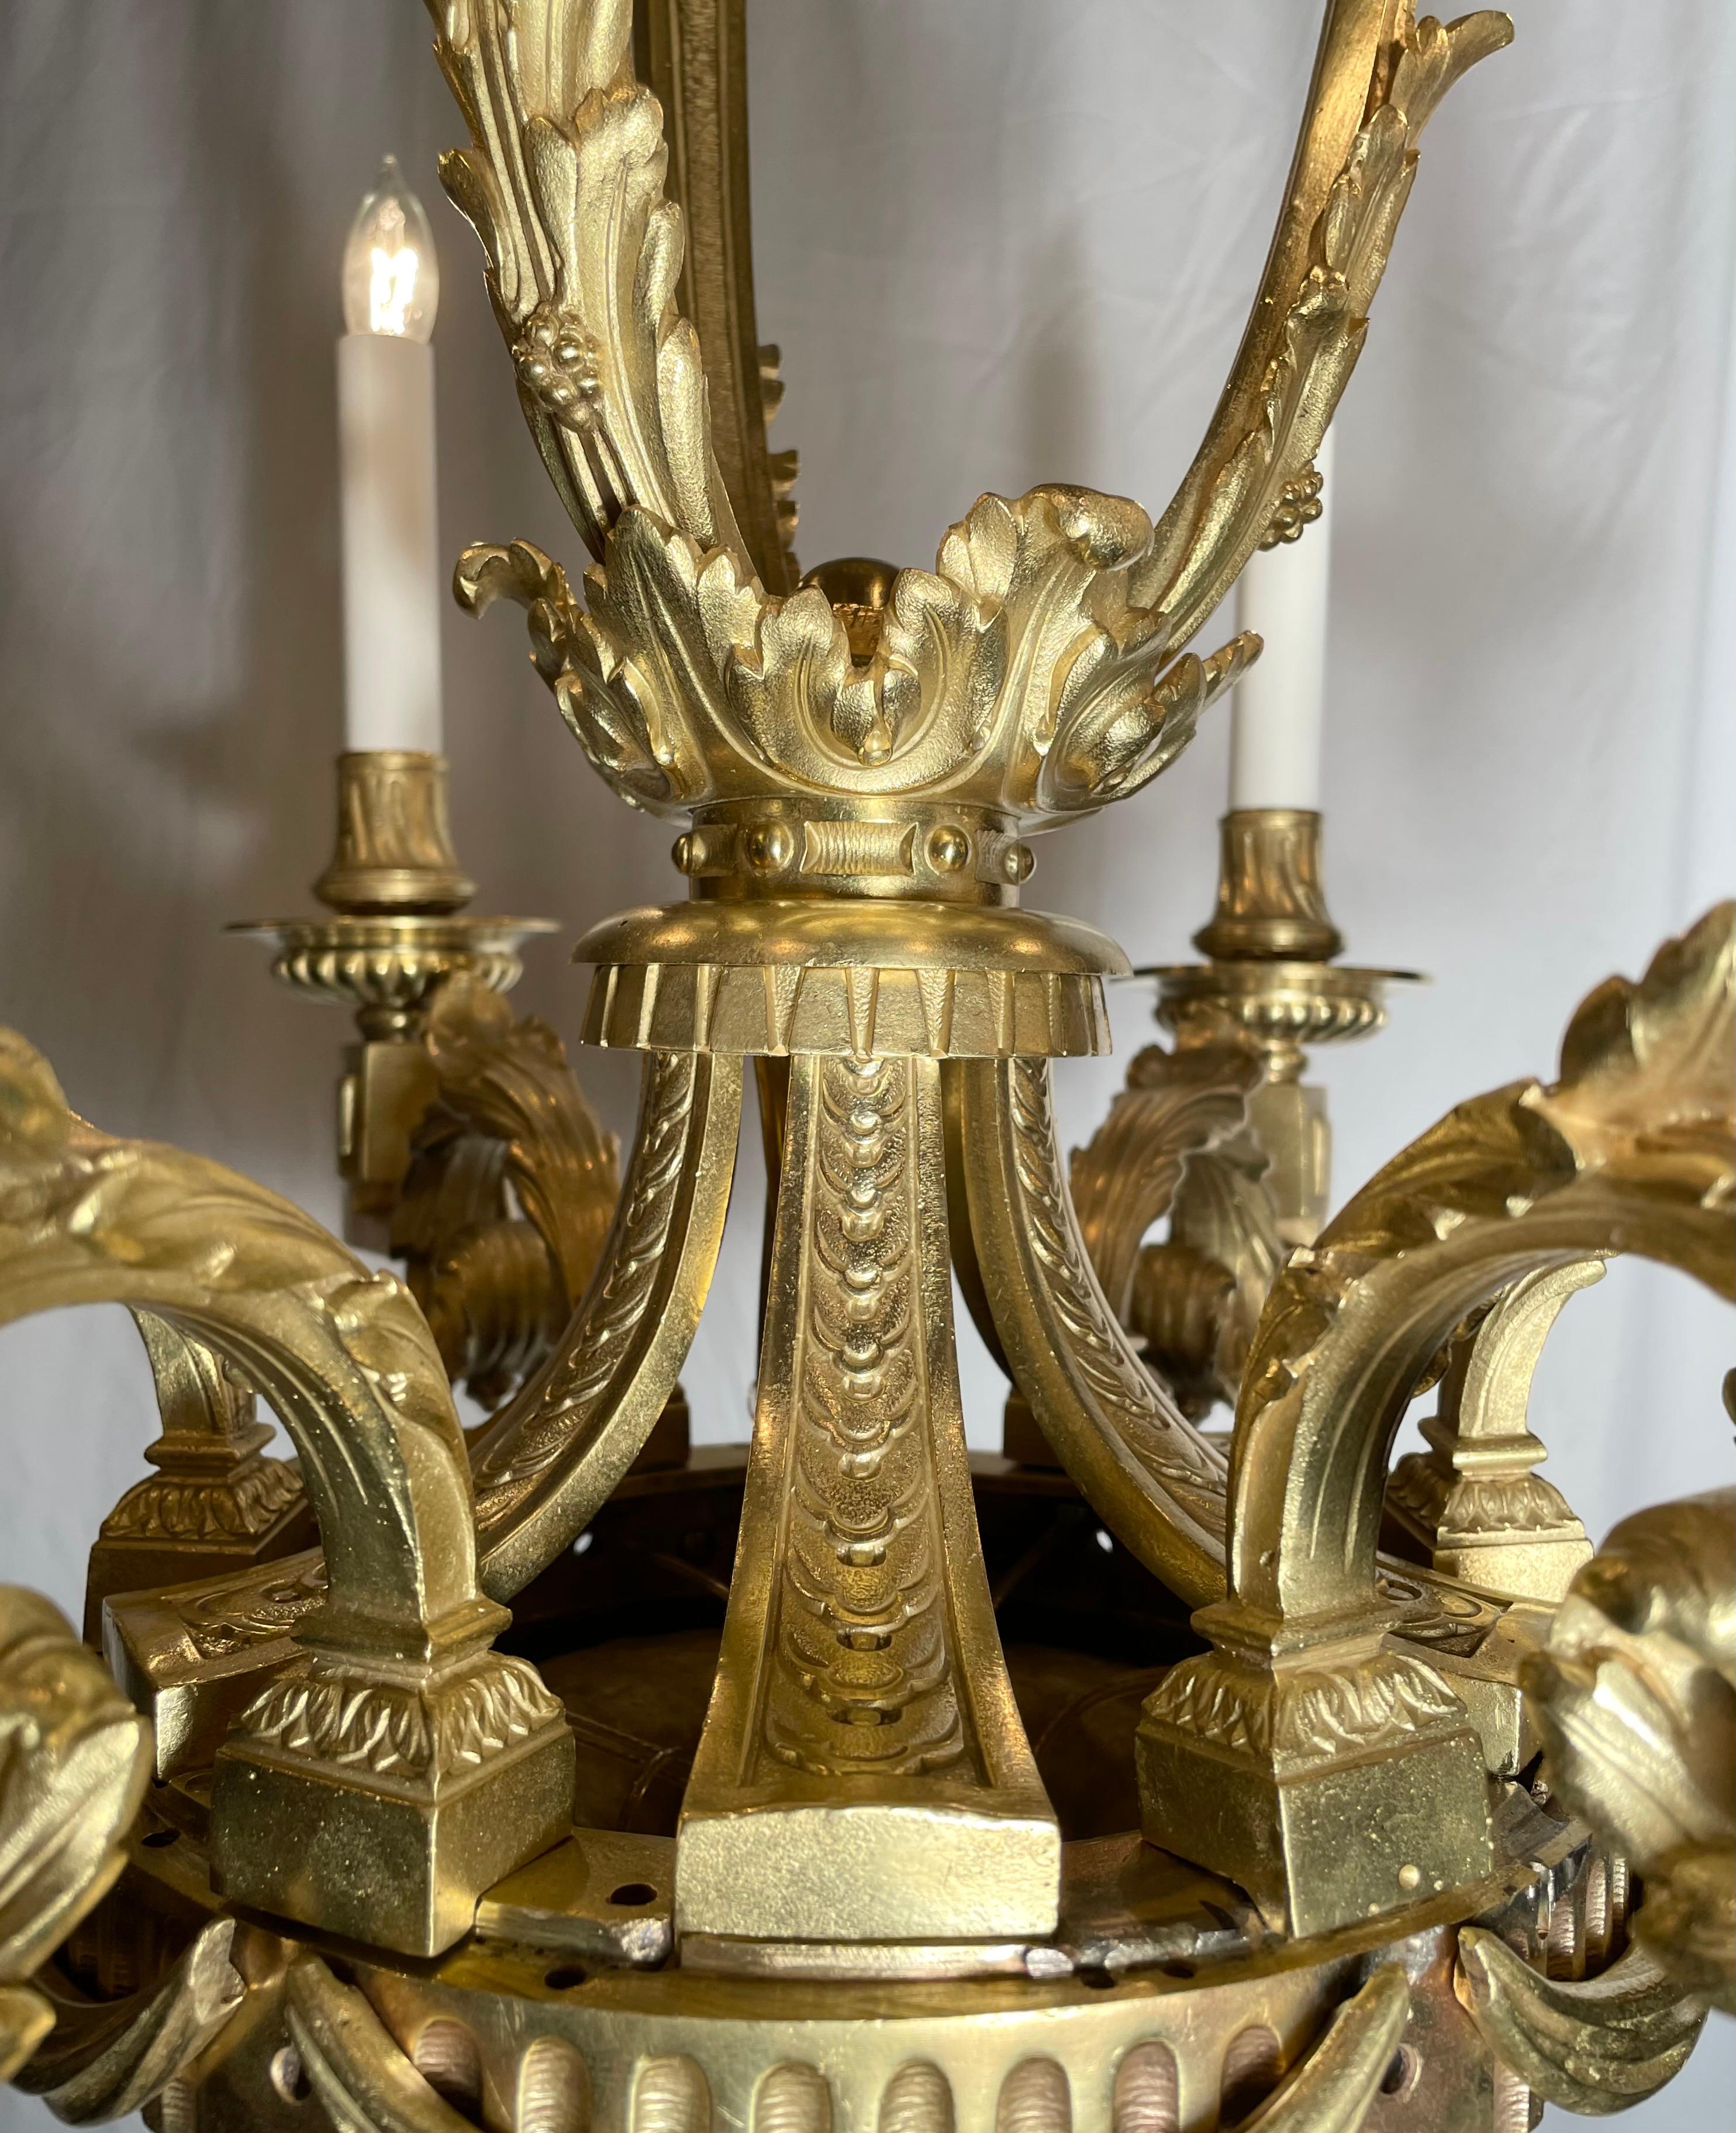 16th century chandelier